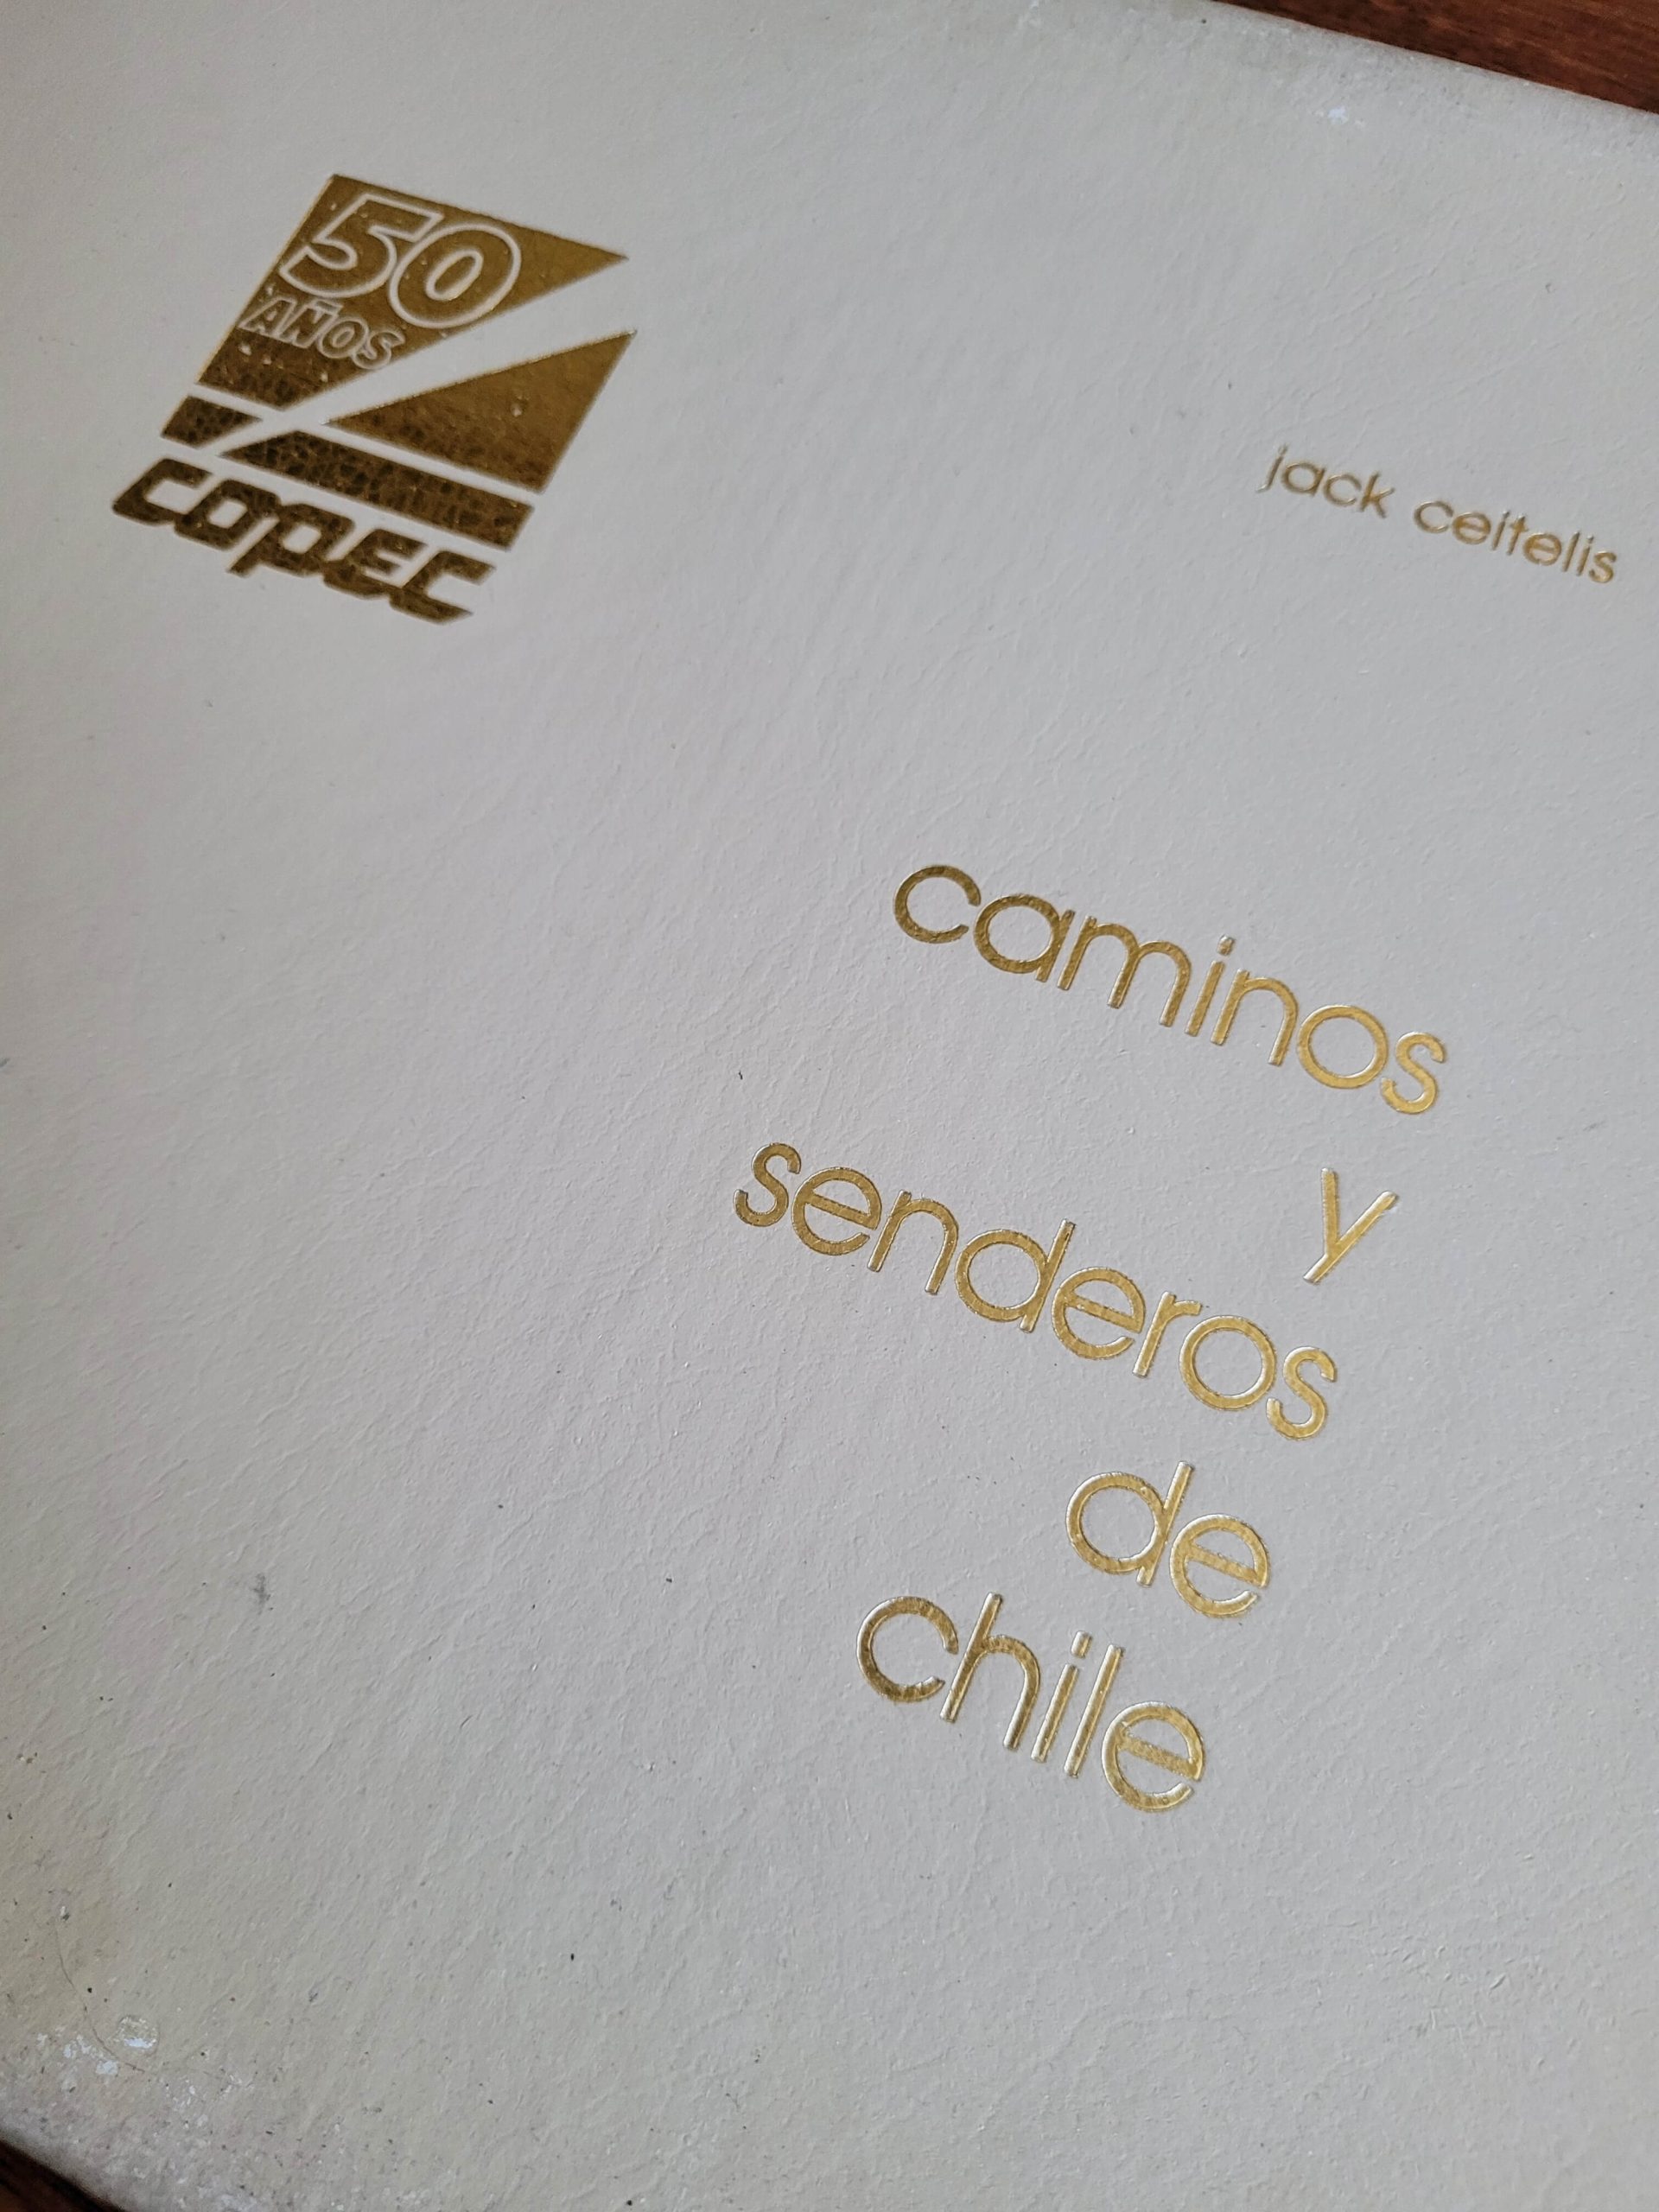 (1985) COPEC 50 años: caminos y senderos de Chile